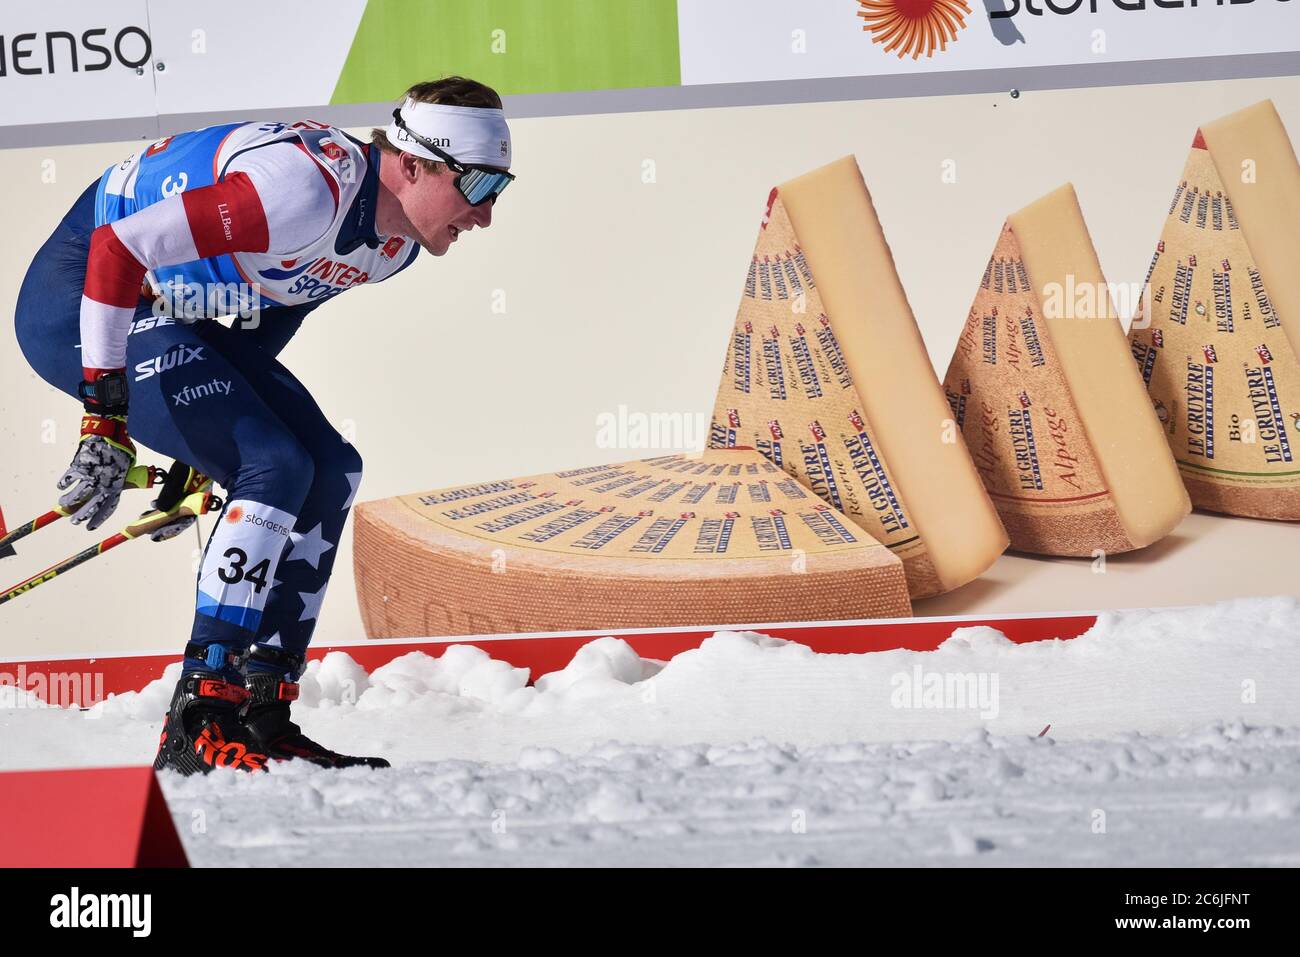 Kyle Bratrud, membre DE l'équipe DE ski AMÉRICAINE, a passé un signe pour le sponsor de la FIS, Gruyere Cheese, 2019 FIS World Championships, Seefeld, Autriche. Banque D'Images